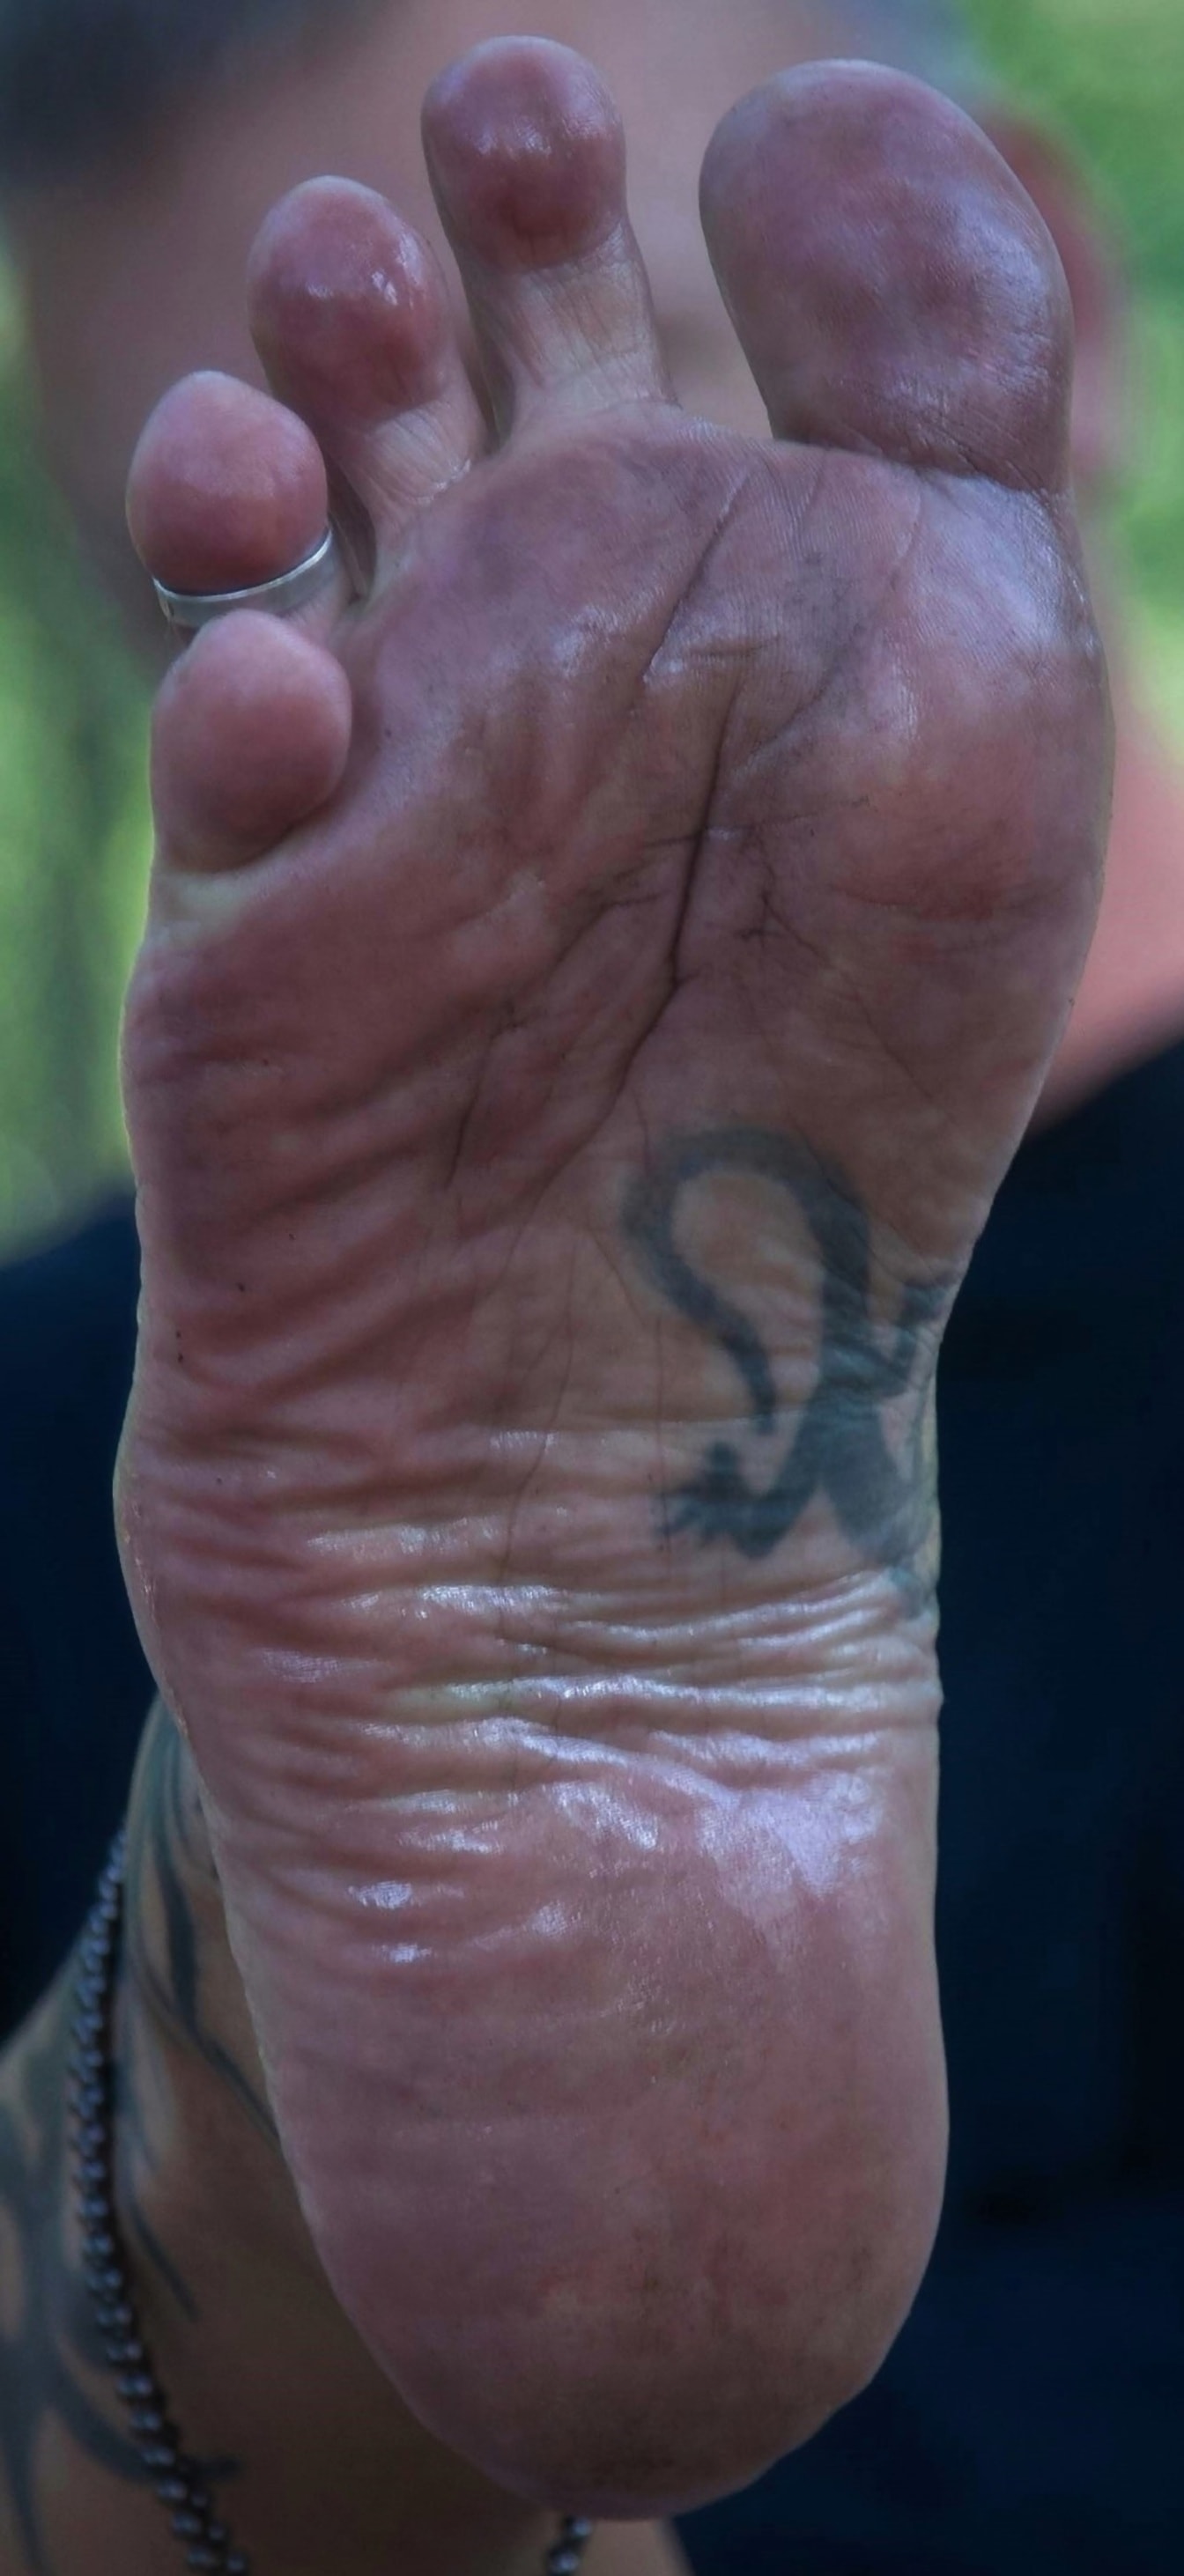 Barefoot muž detail špinavé nohy s tetováním a prstenem